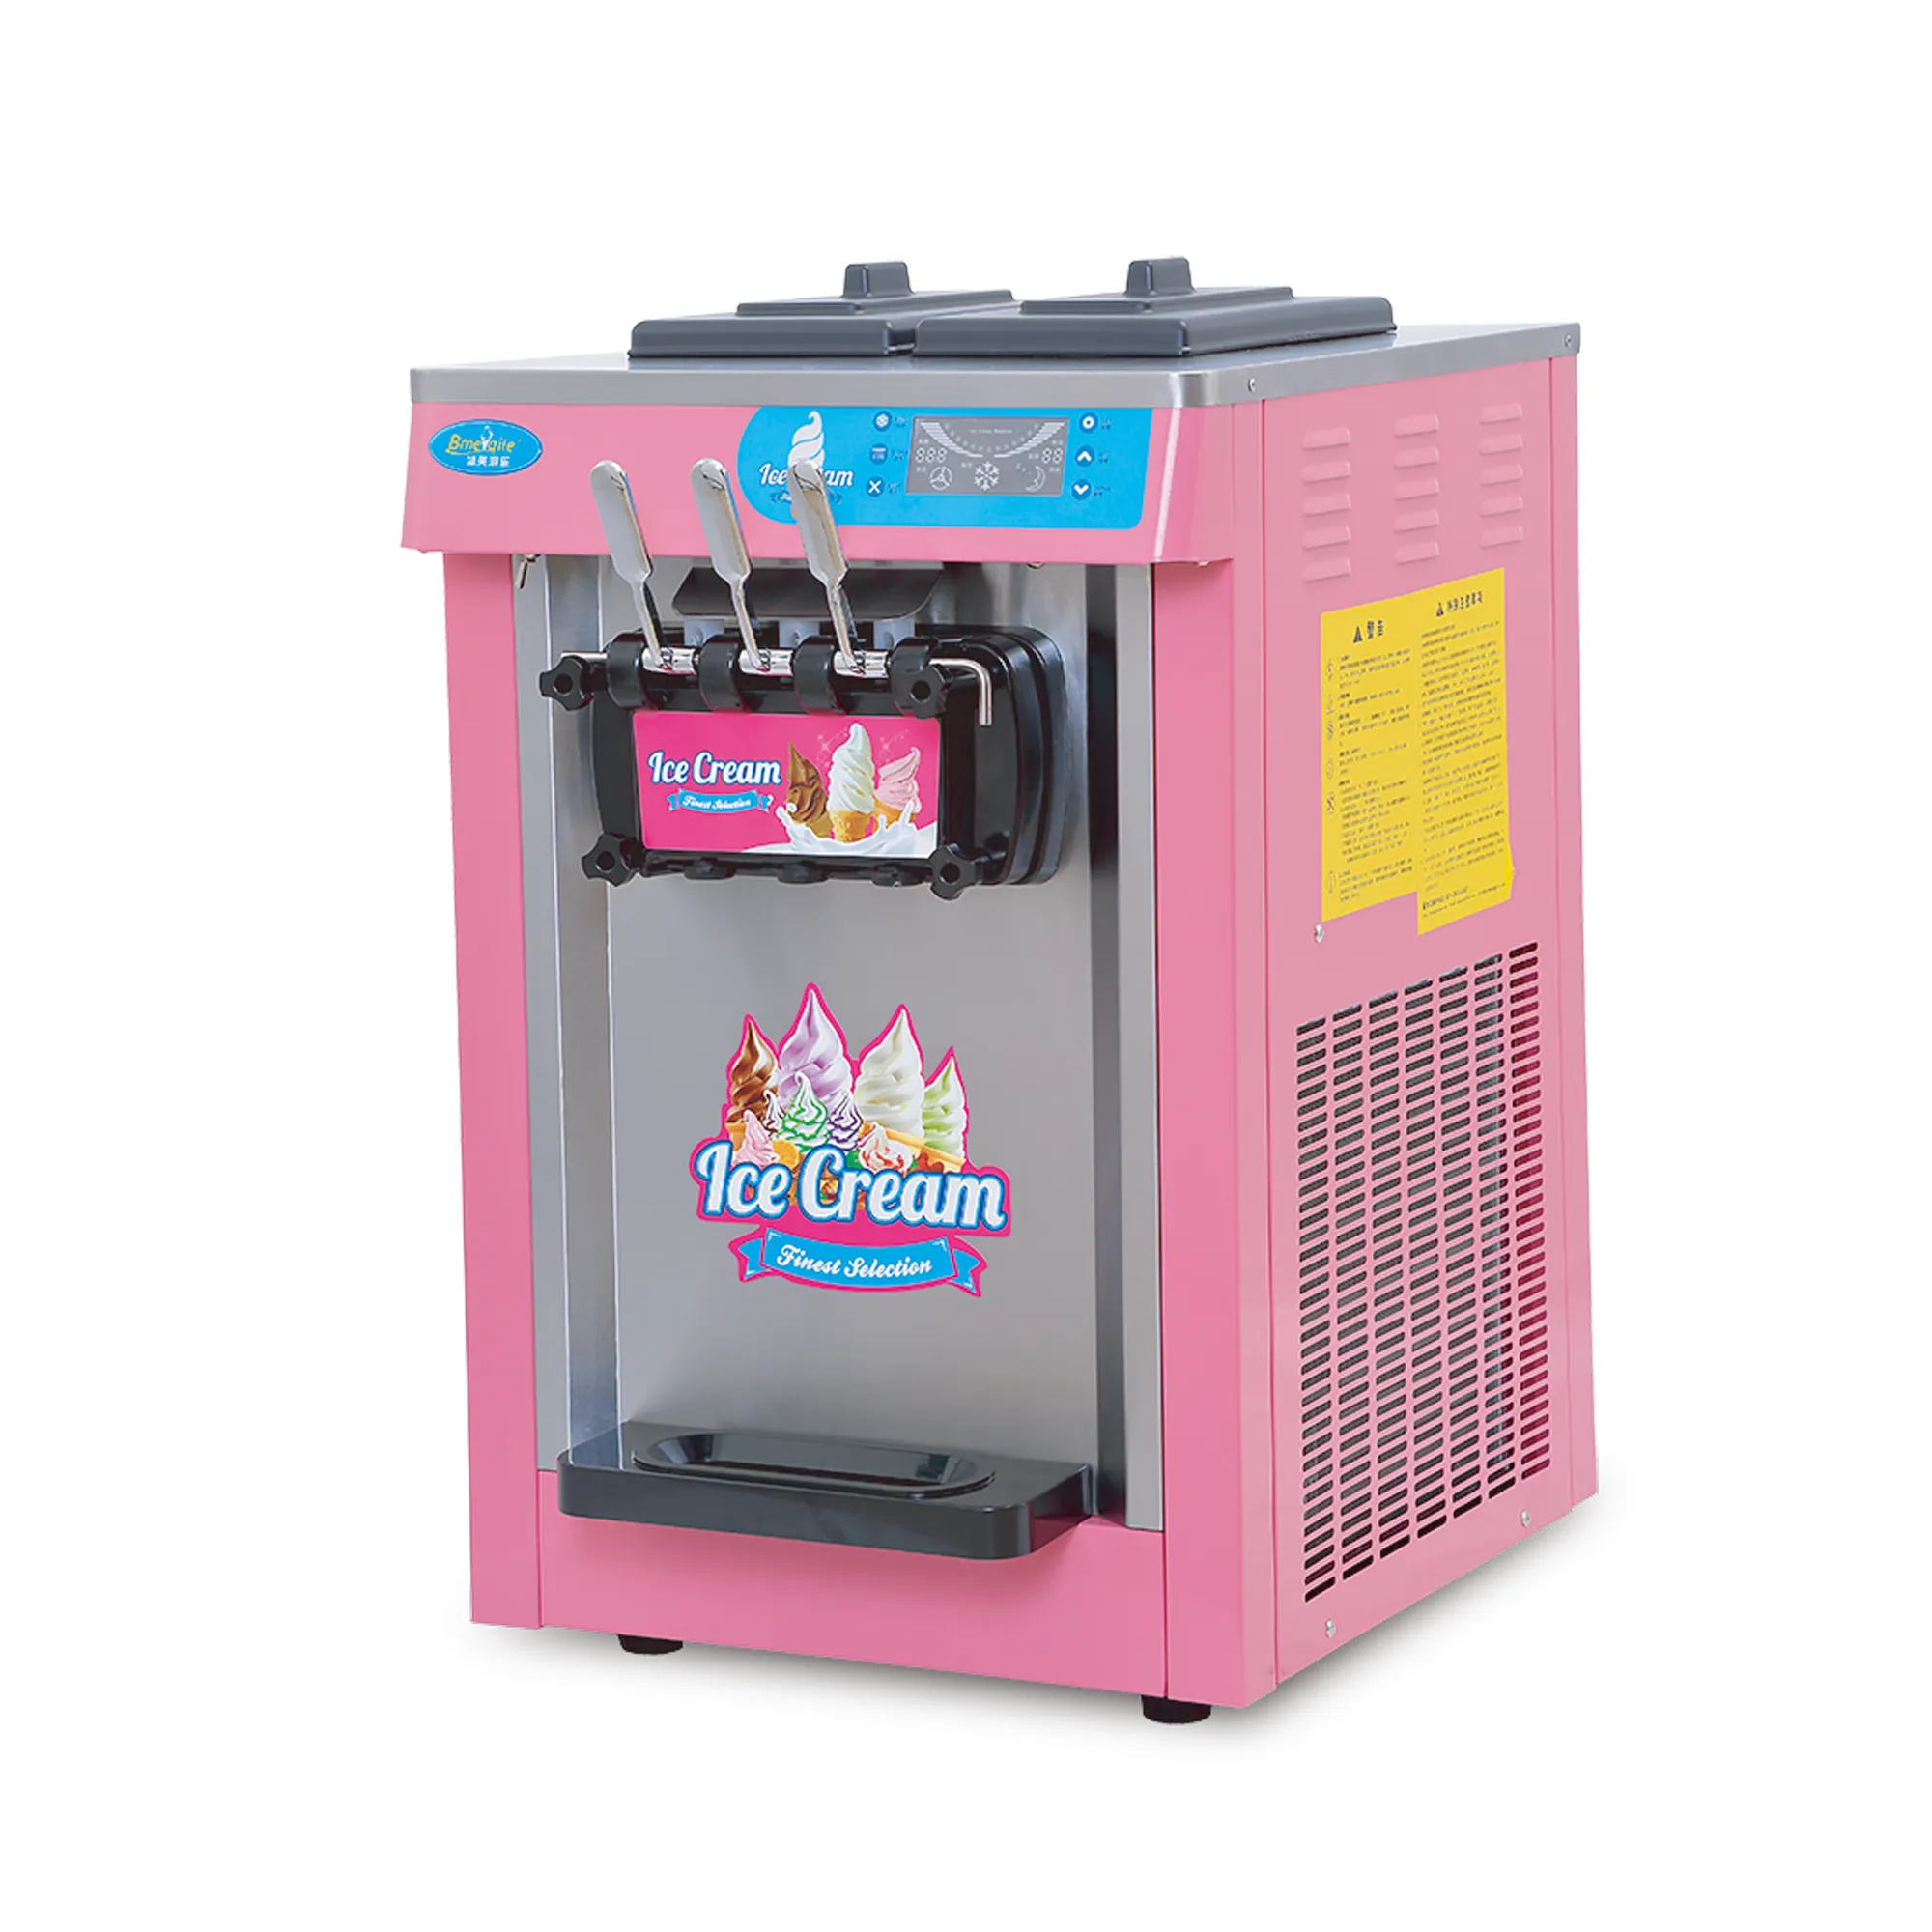 Cream Making Machine Commercial Ice Cream Machine Soft Ice Cream Making Machine With Factory Price